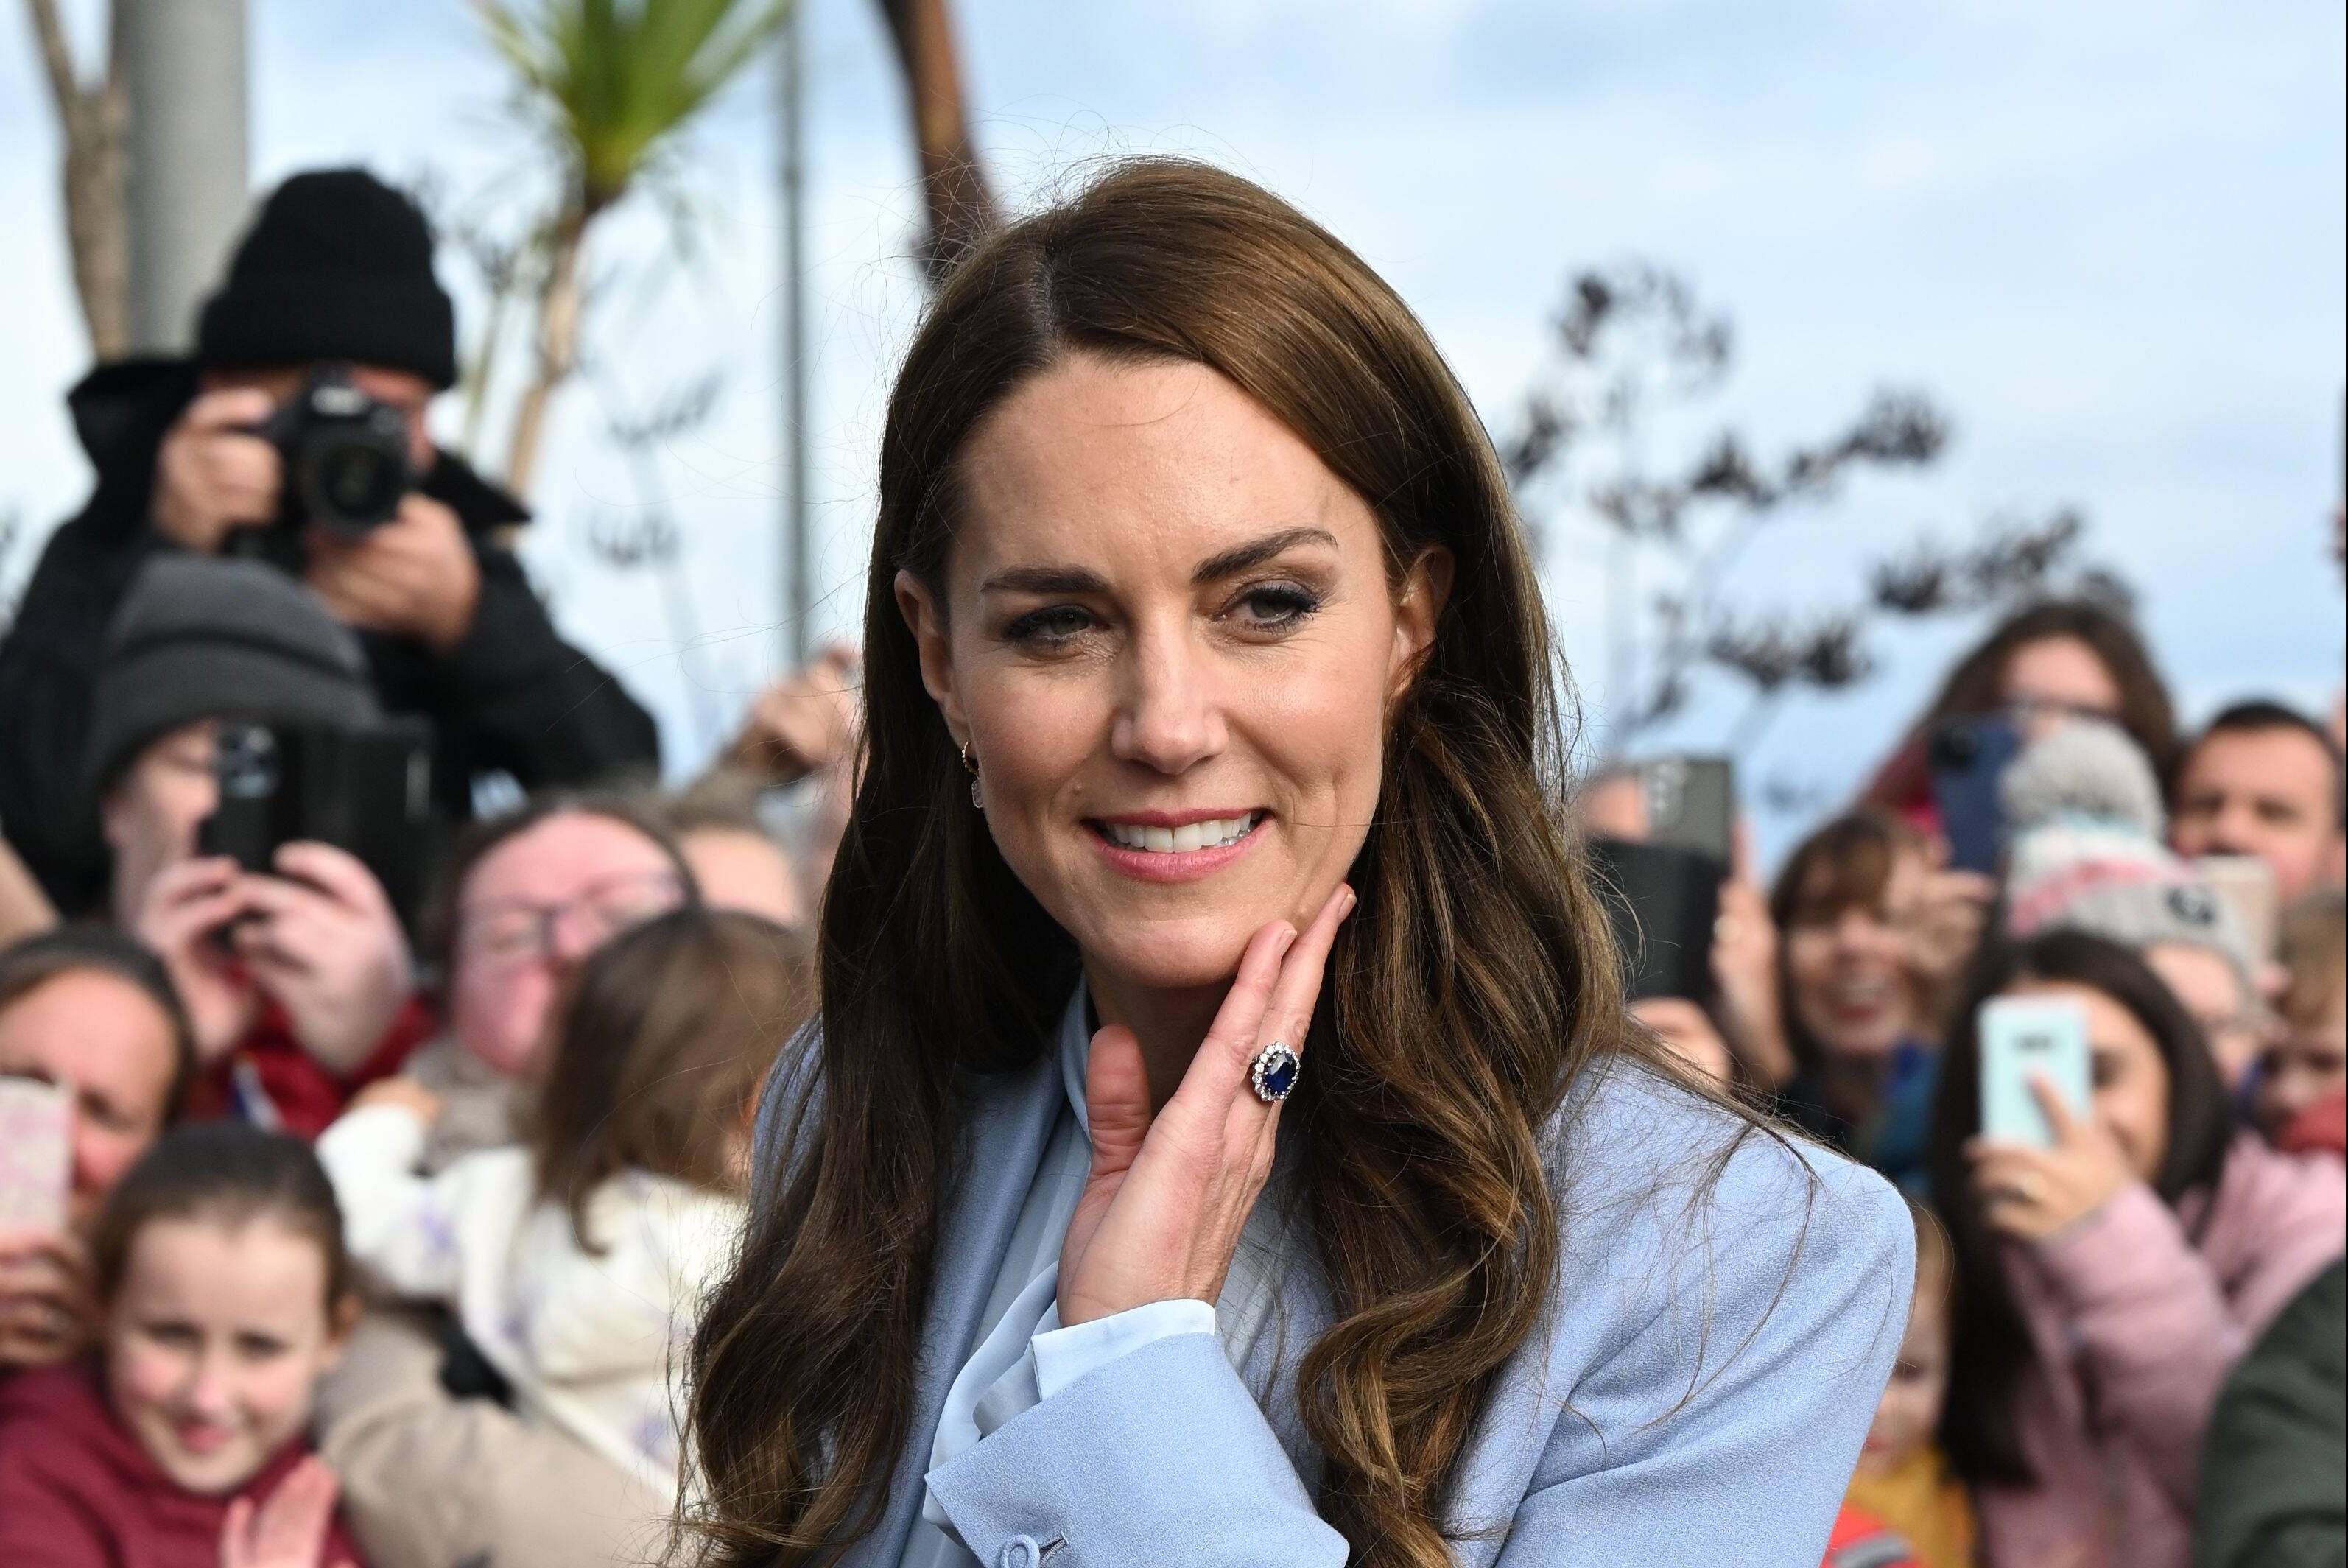 Kate Middleton In Öffentlichkeit Bloßgestellt Reaktion Ist Deutlich Derwestende 